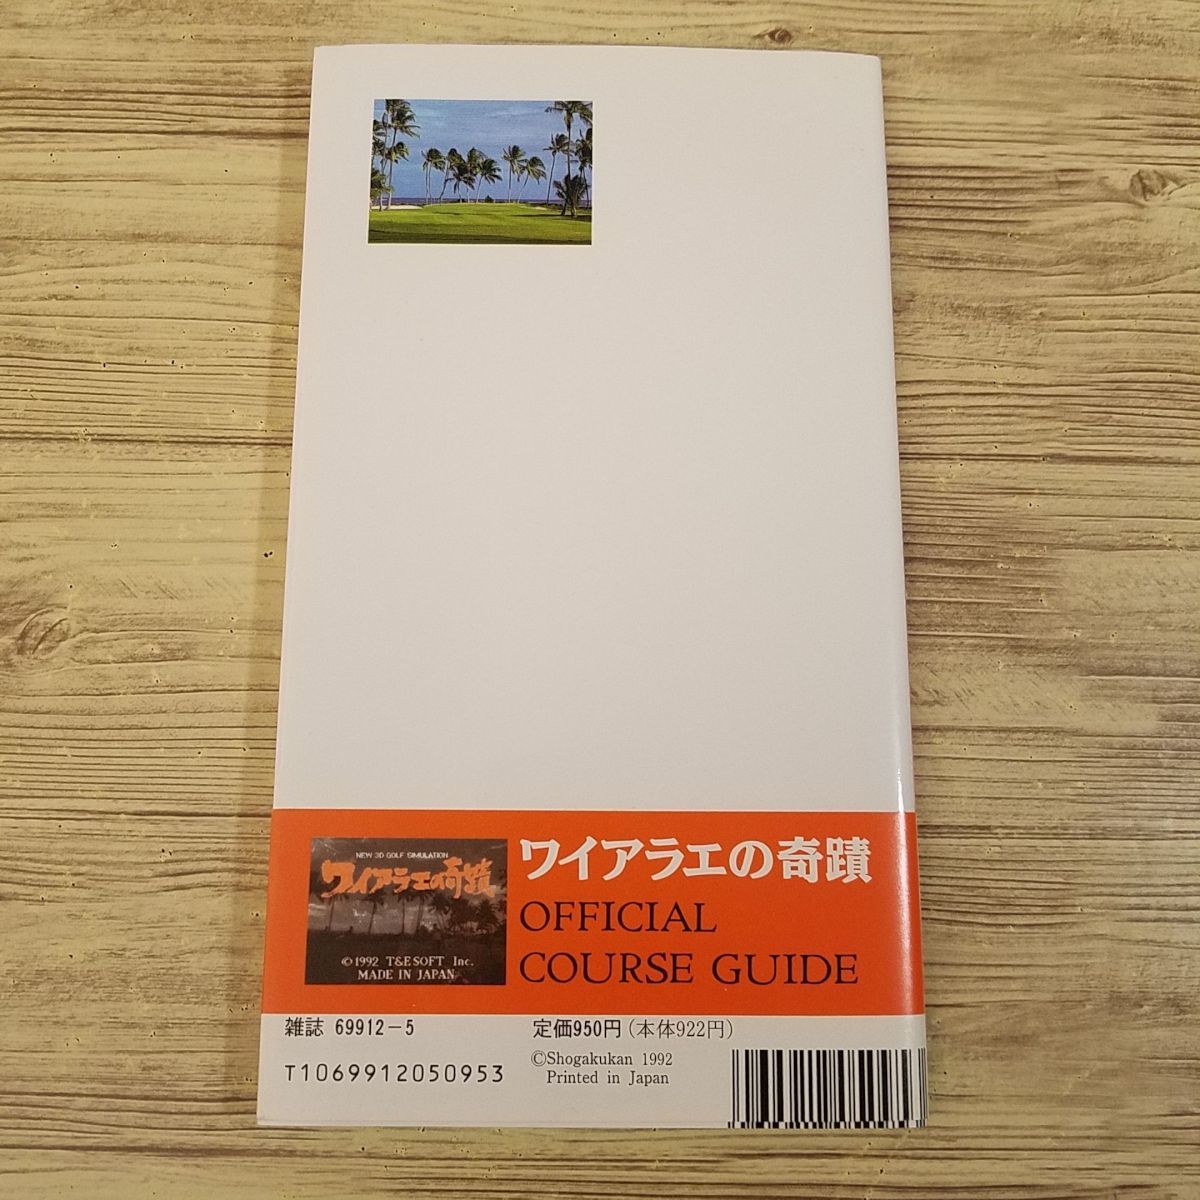  гид [waialae. .. официальный * course гид ( первая версия * с поясом оби )] Super Famicom SFC NEW 3D GOLF SIMULATION